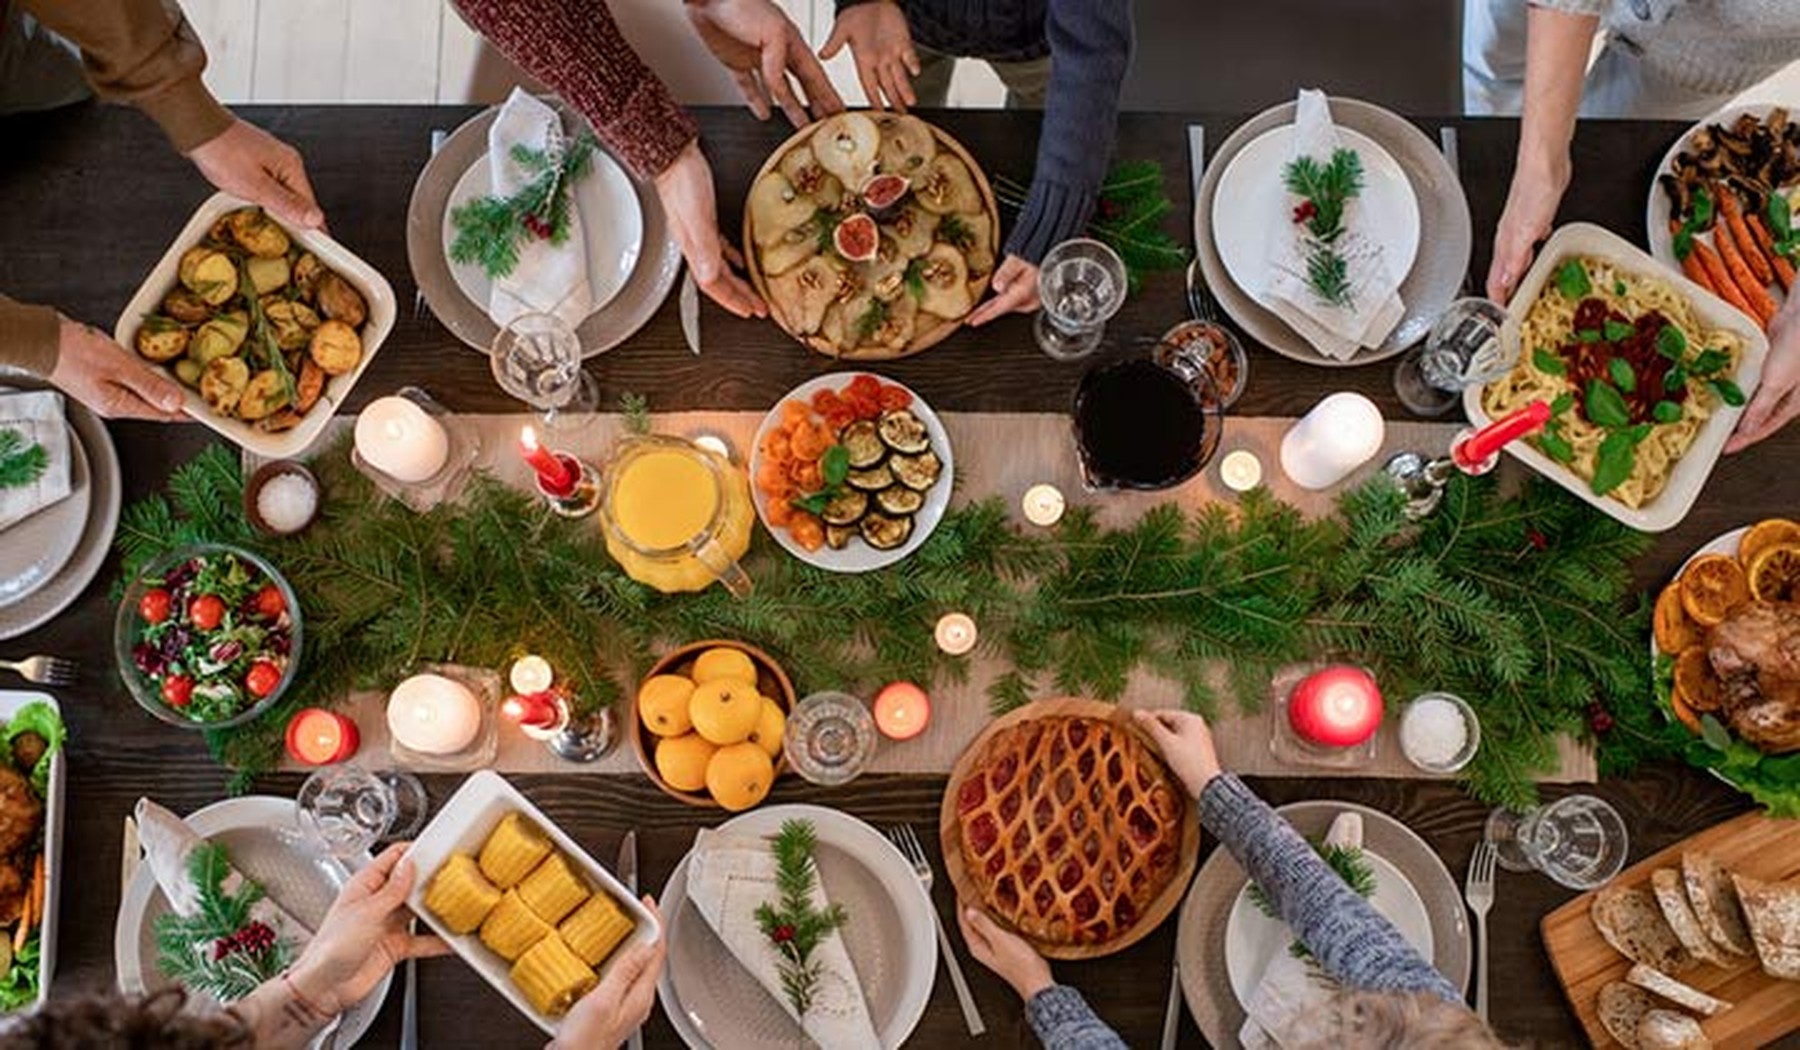 Plano cenital de una mesa decorada por Navidad con personas pasándose platos de comida